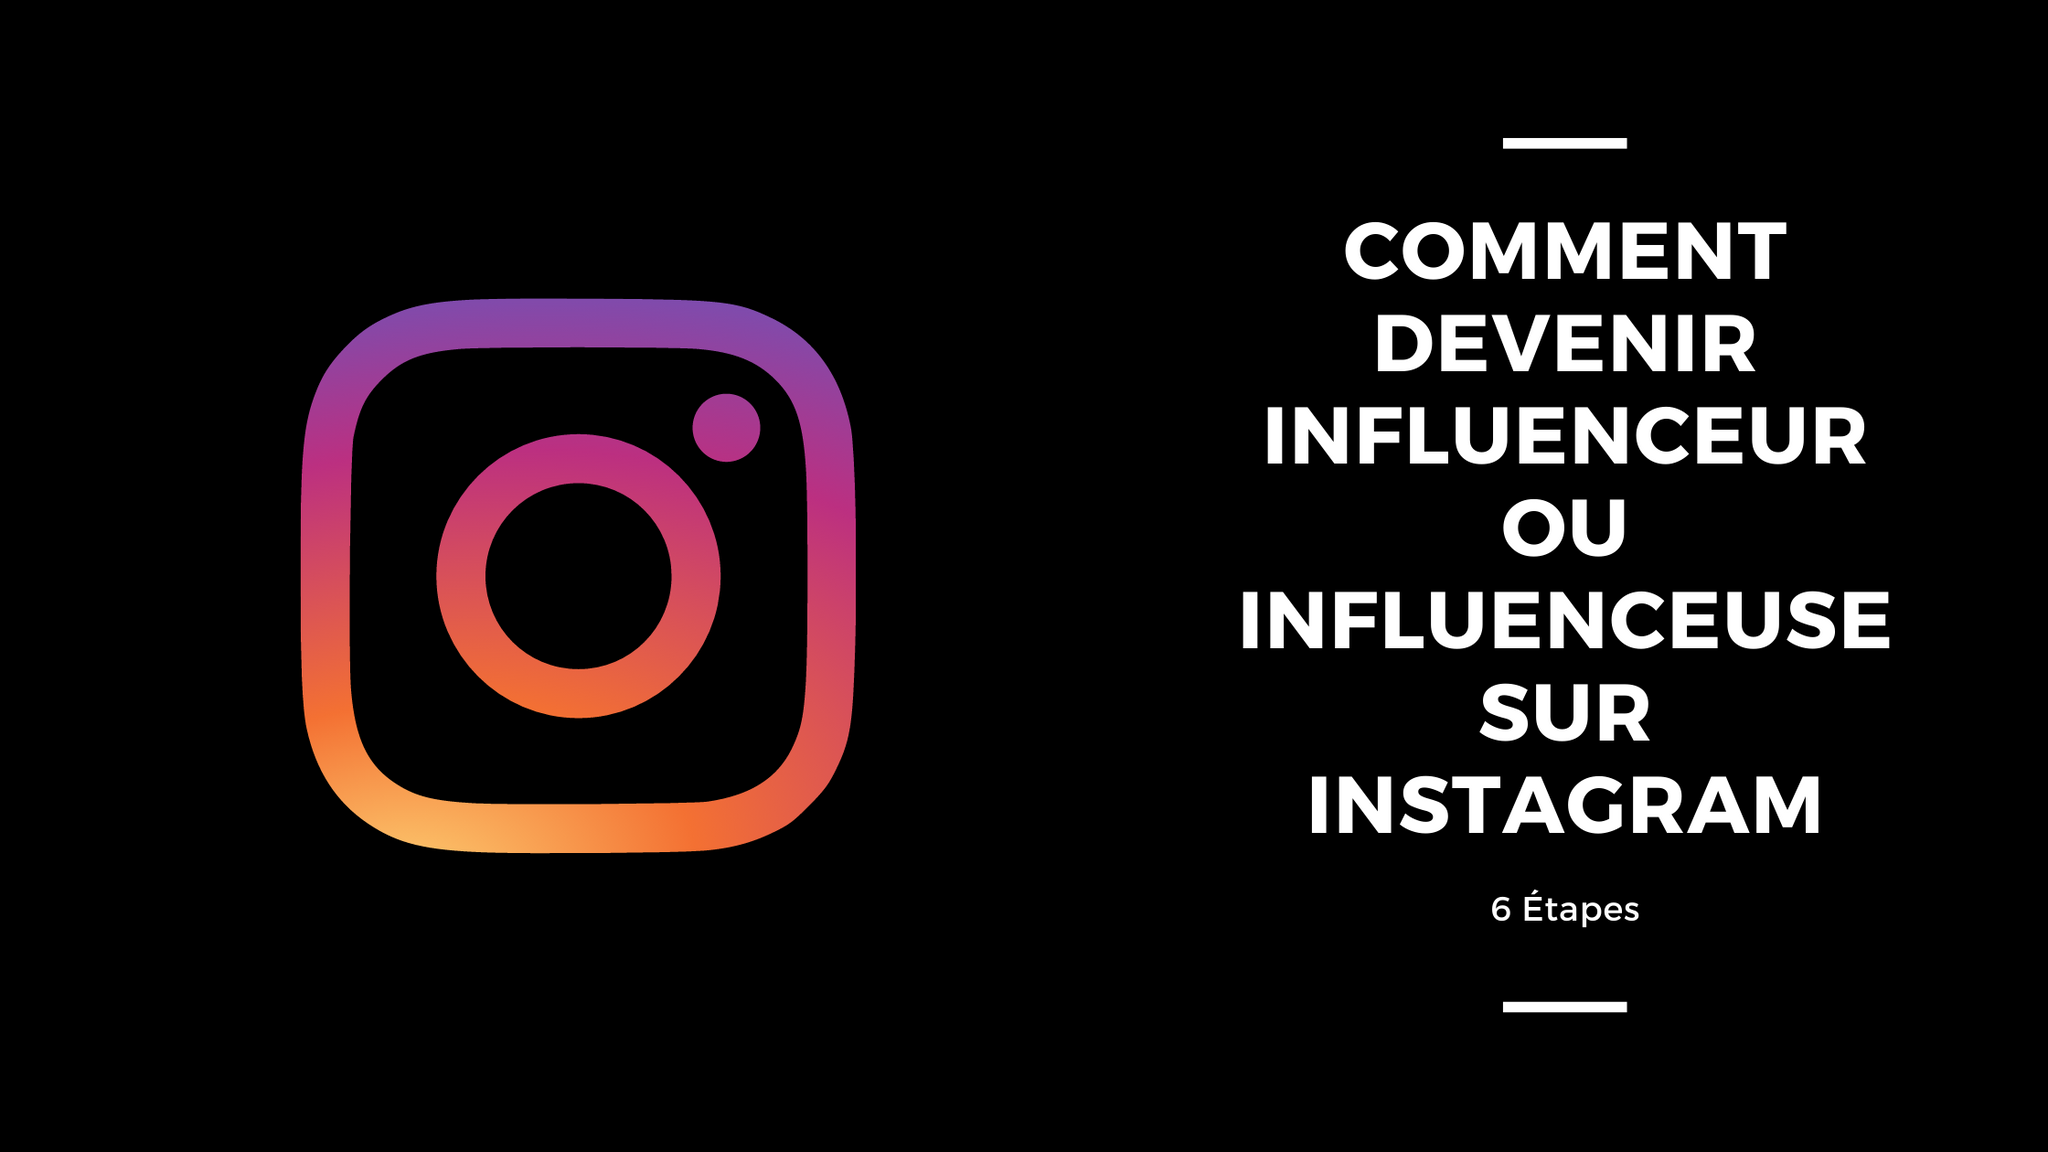 6 Étapes Pour Devenir Influenceur ou Influenceuse Instagram